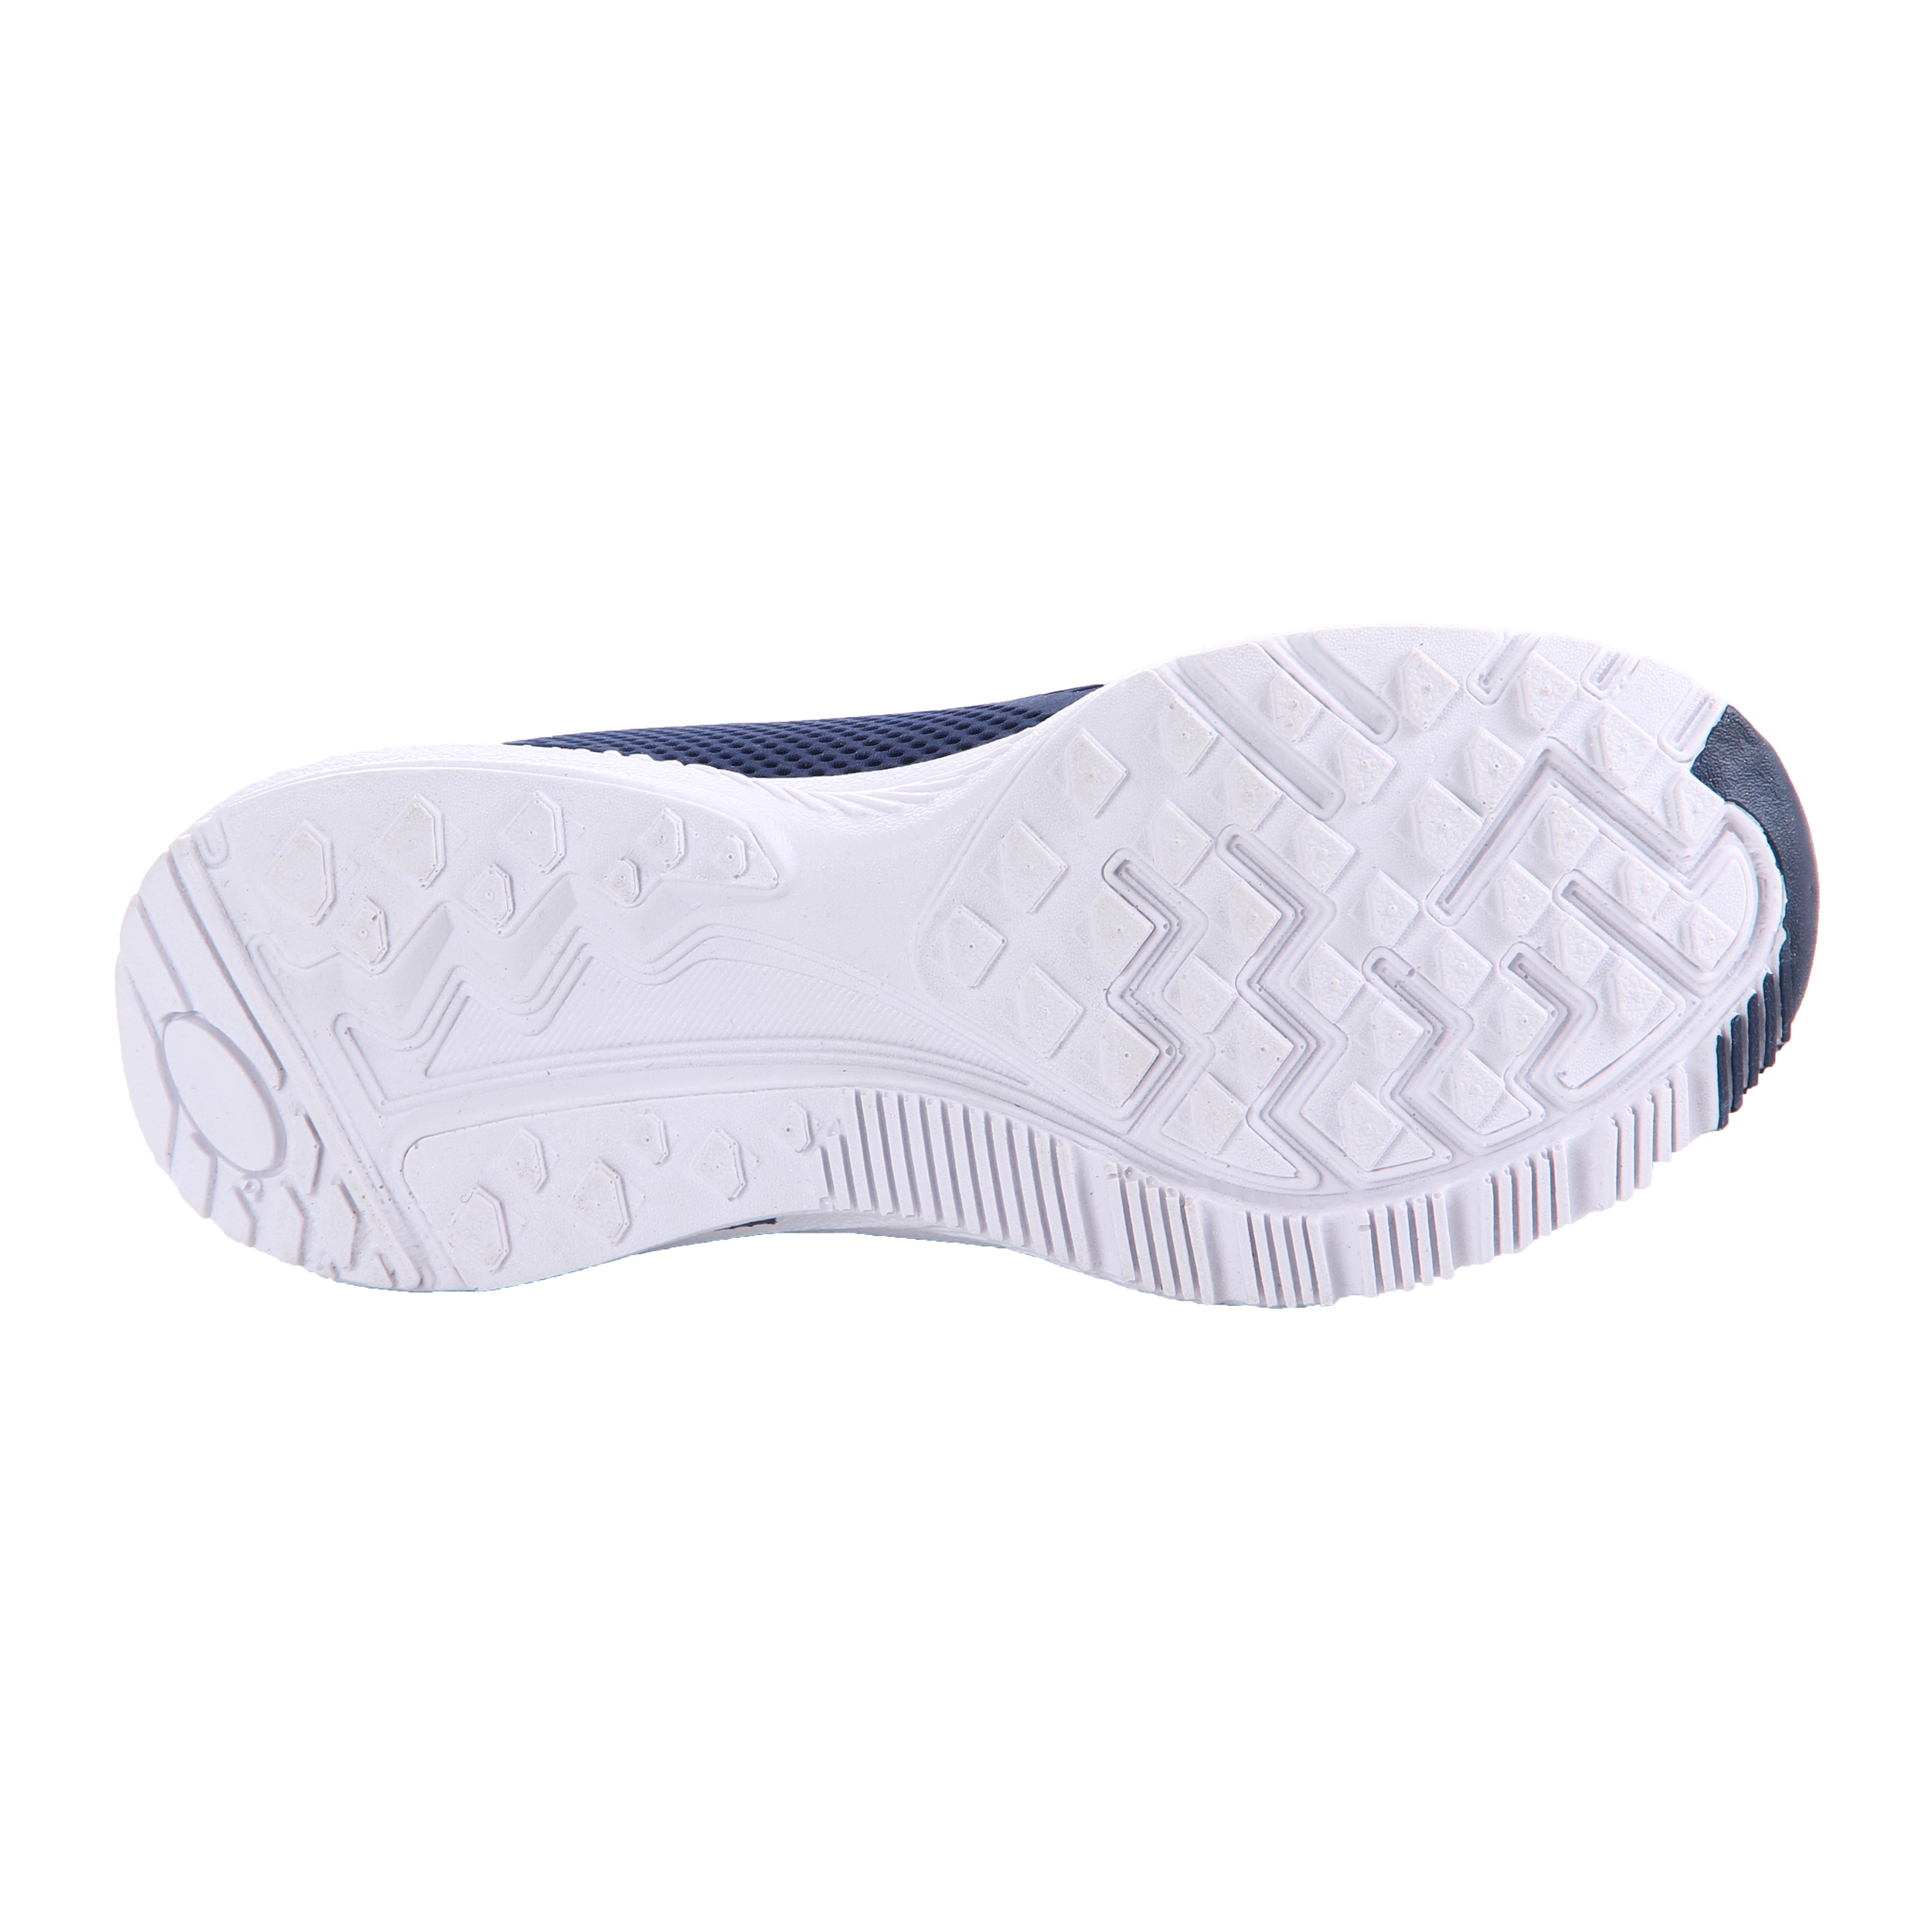  کفش مخصوص پیاده روی زنانه کد 13-P40004